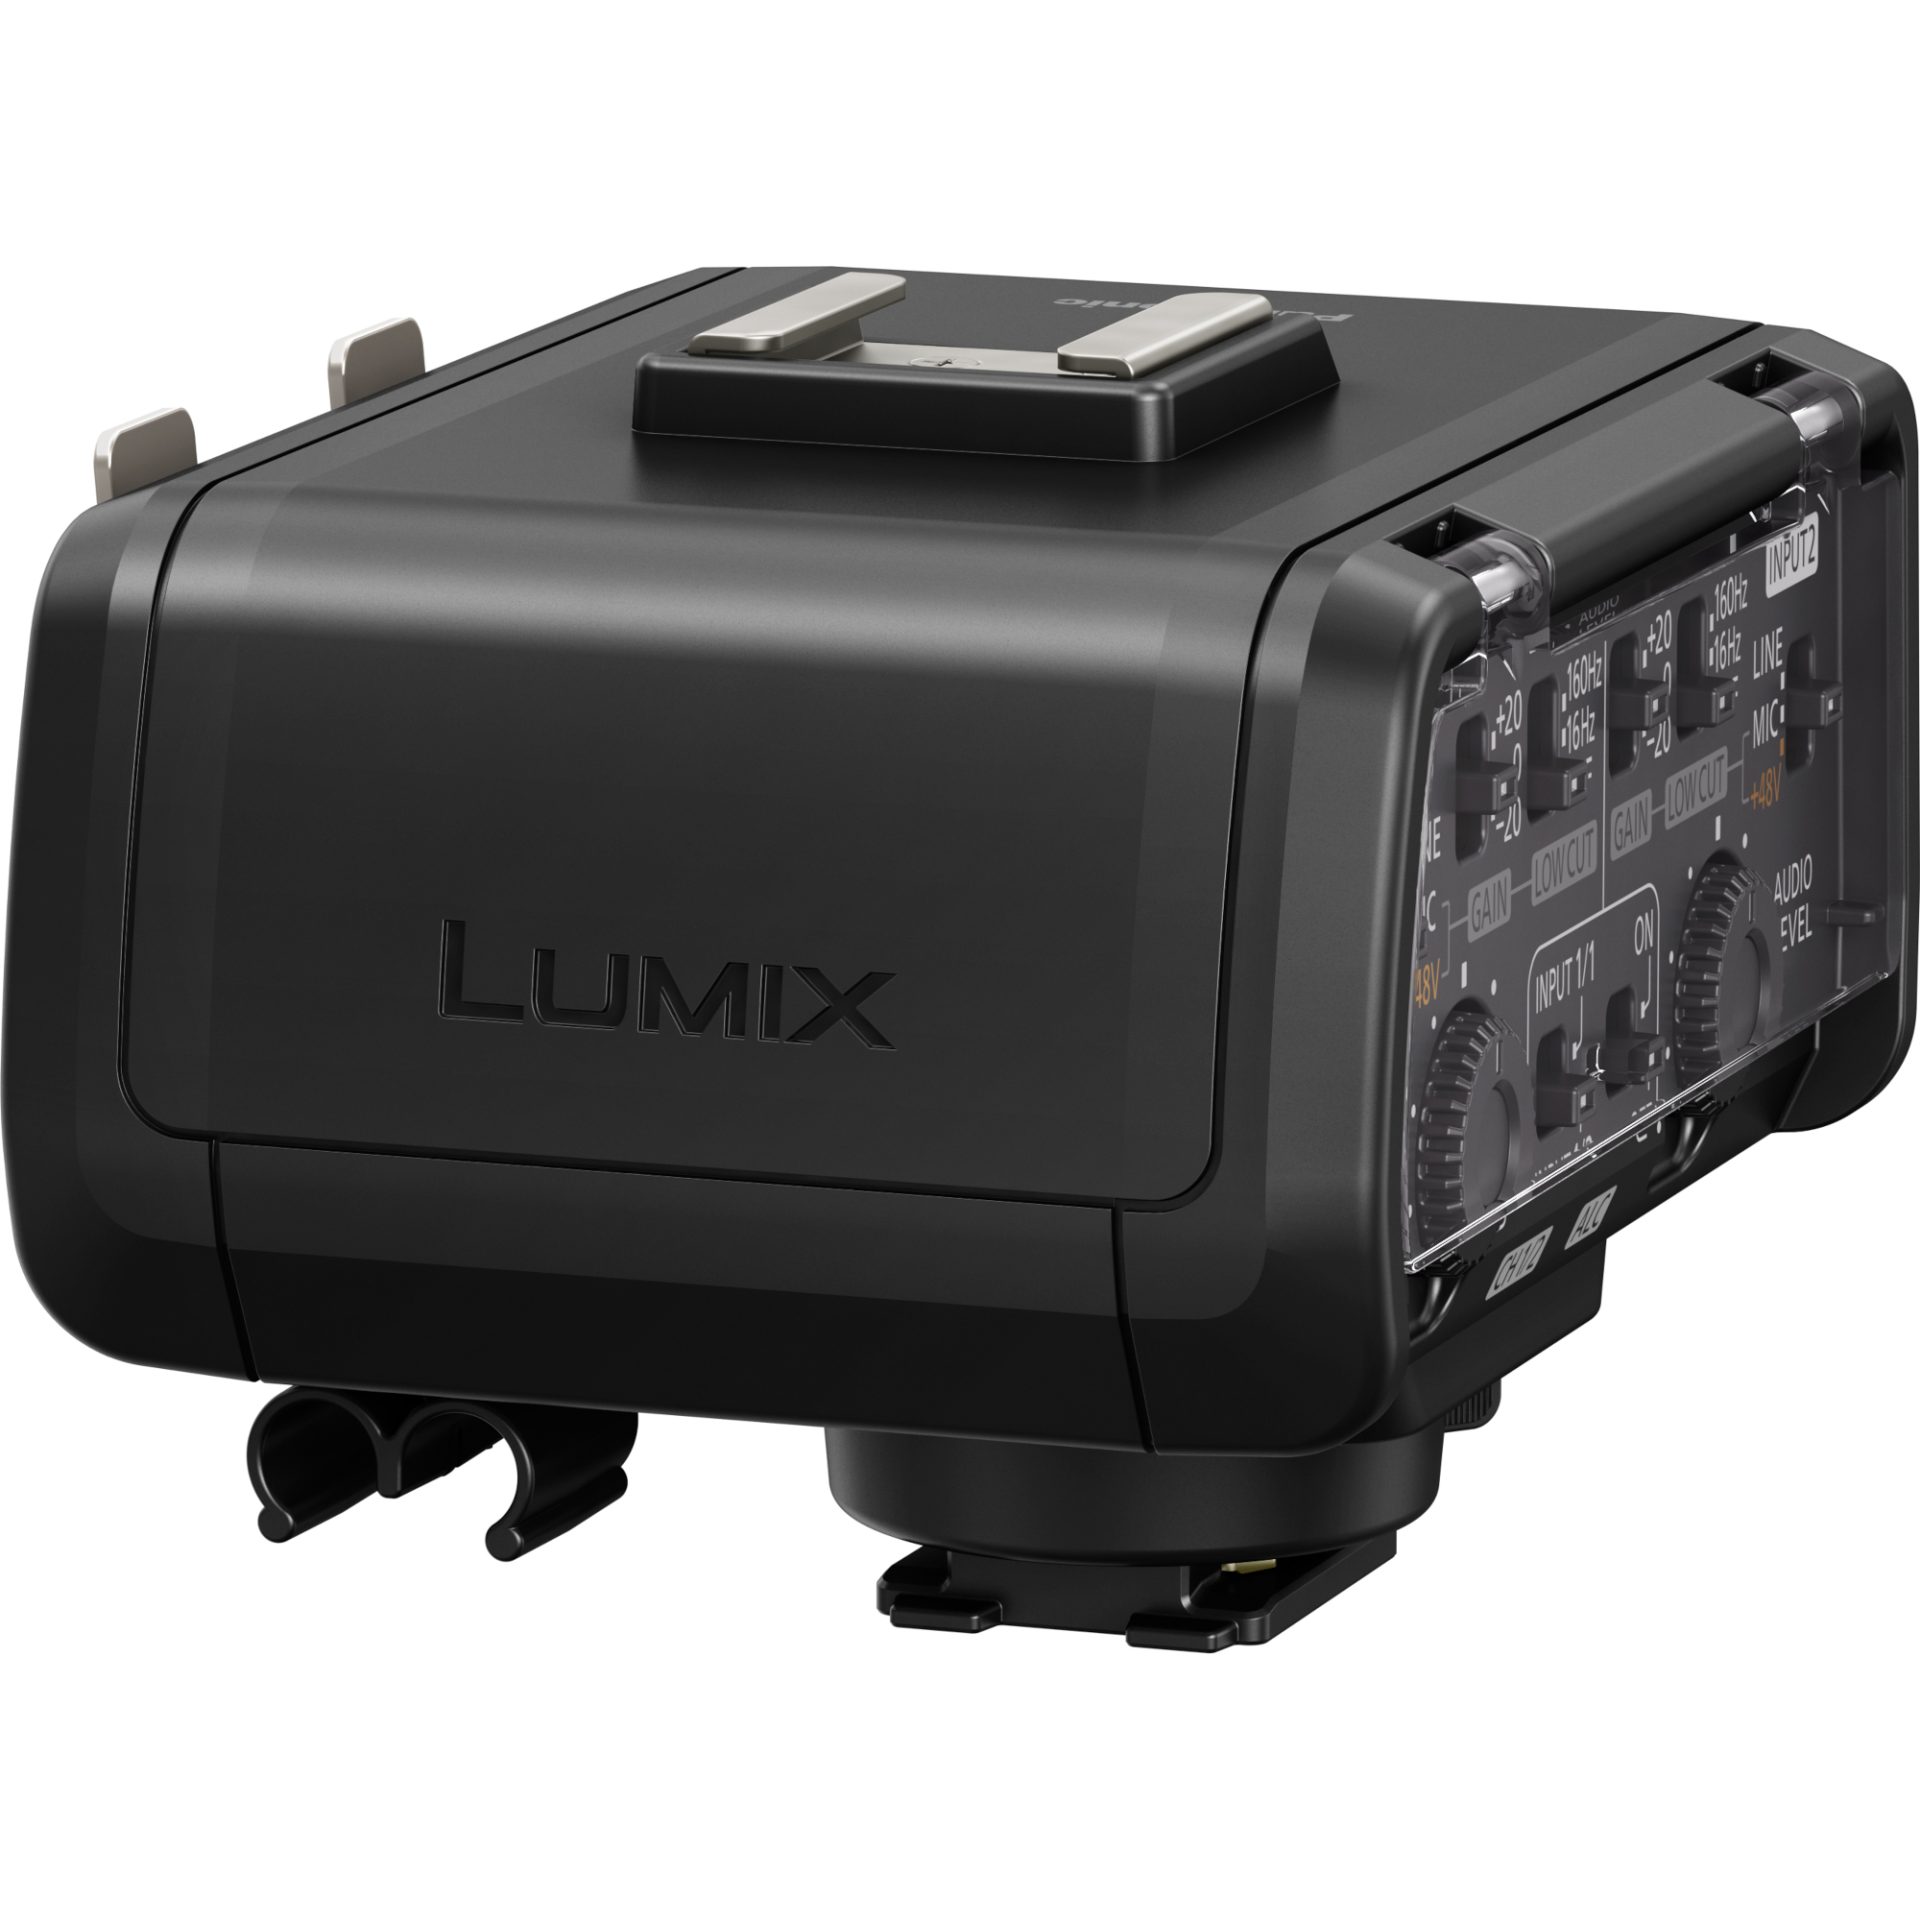 Panasonic DMW-XLR1 XLR mikrofonní adaptér pro kameru LUMIX GH5 (vysoce kvalitní audio kompatibilita, fyzické spínače a knoflíky)